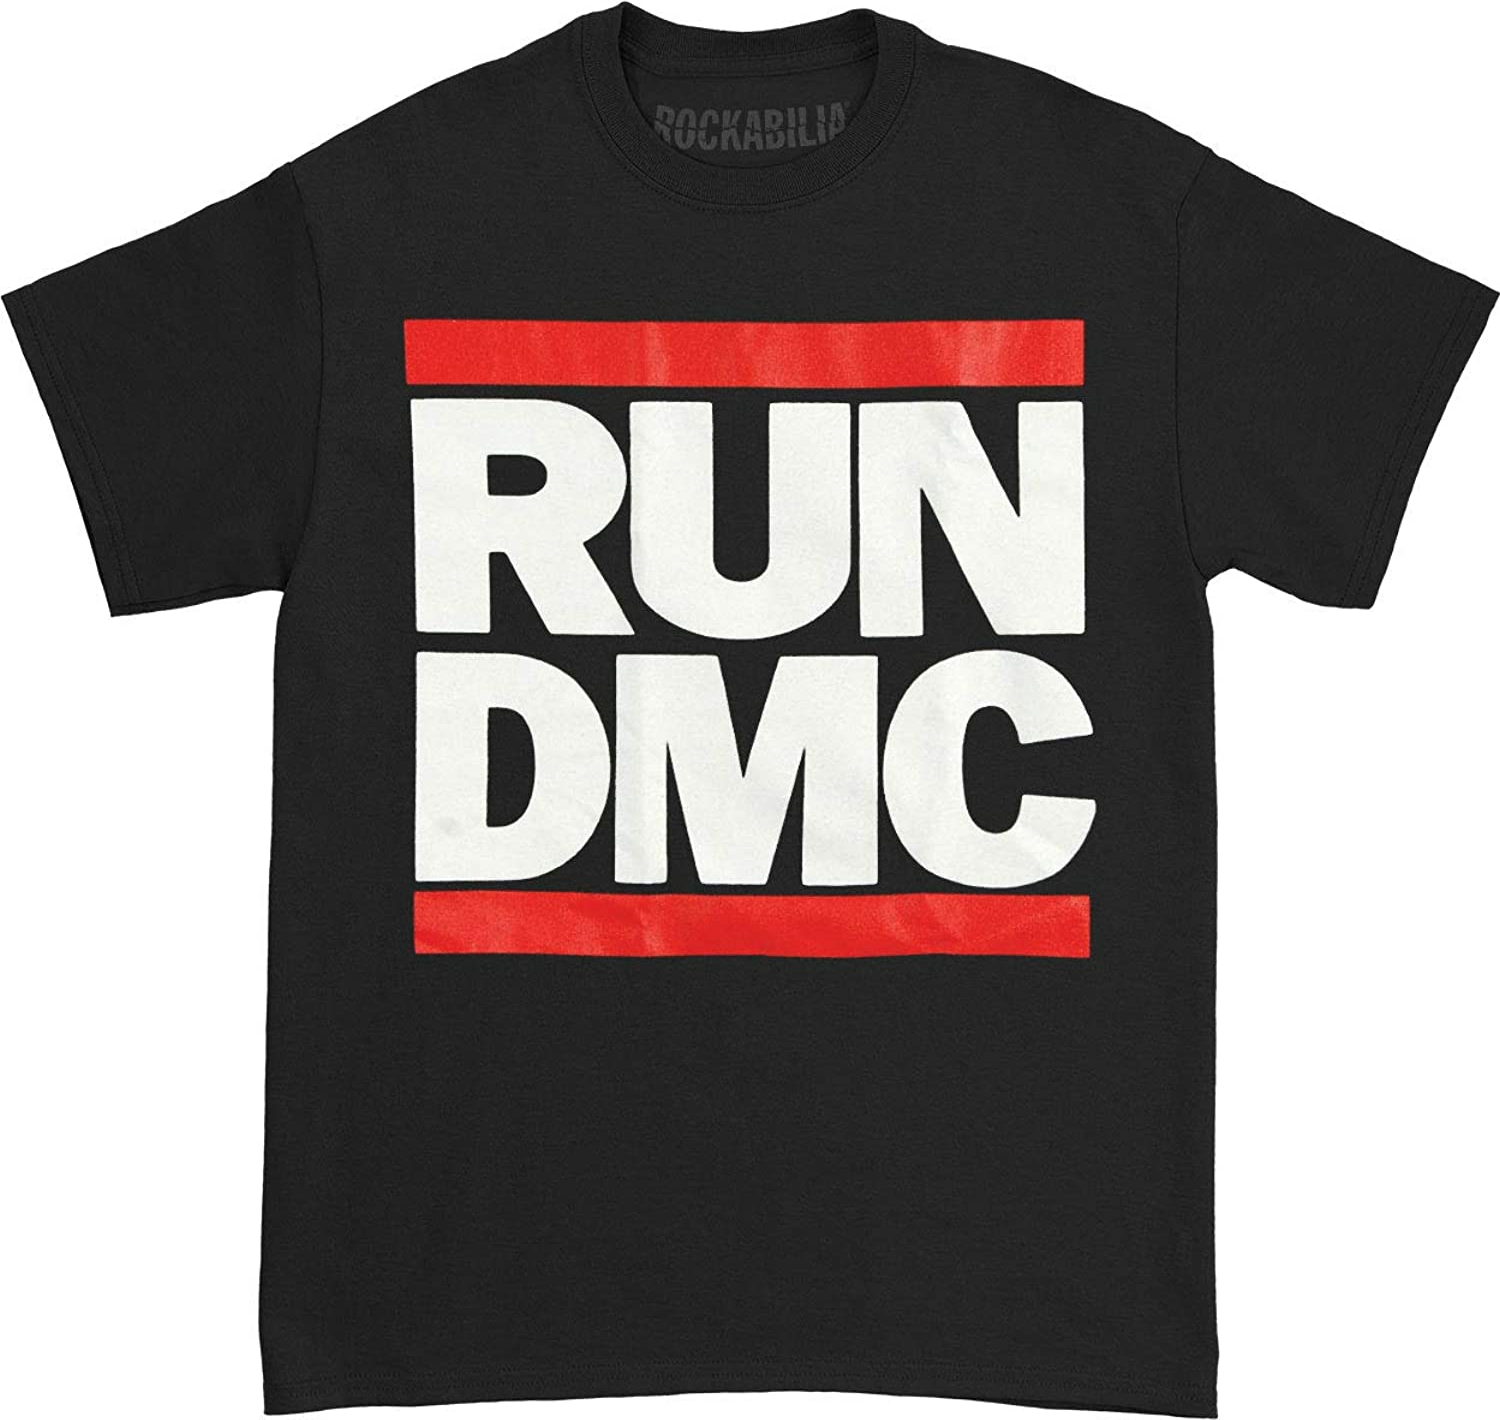 Run DMC.